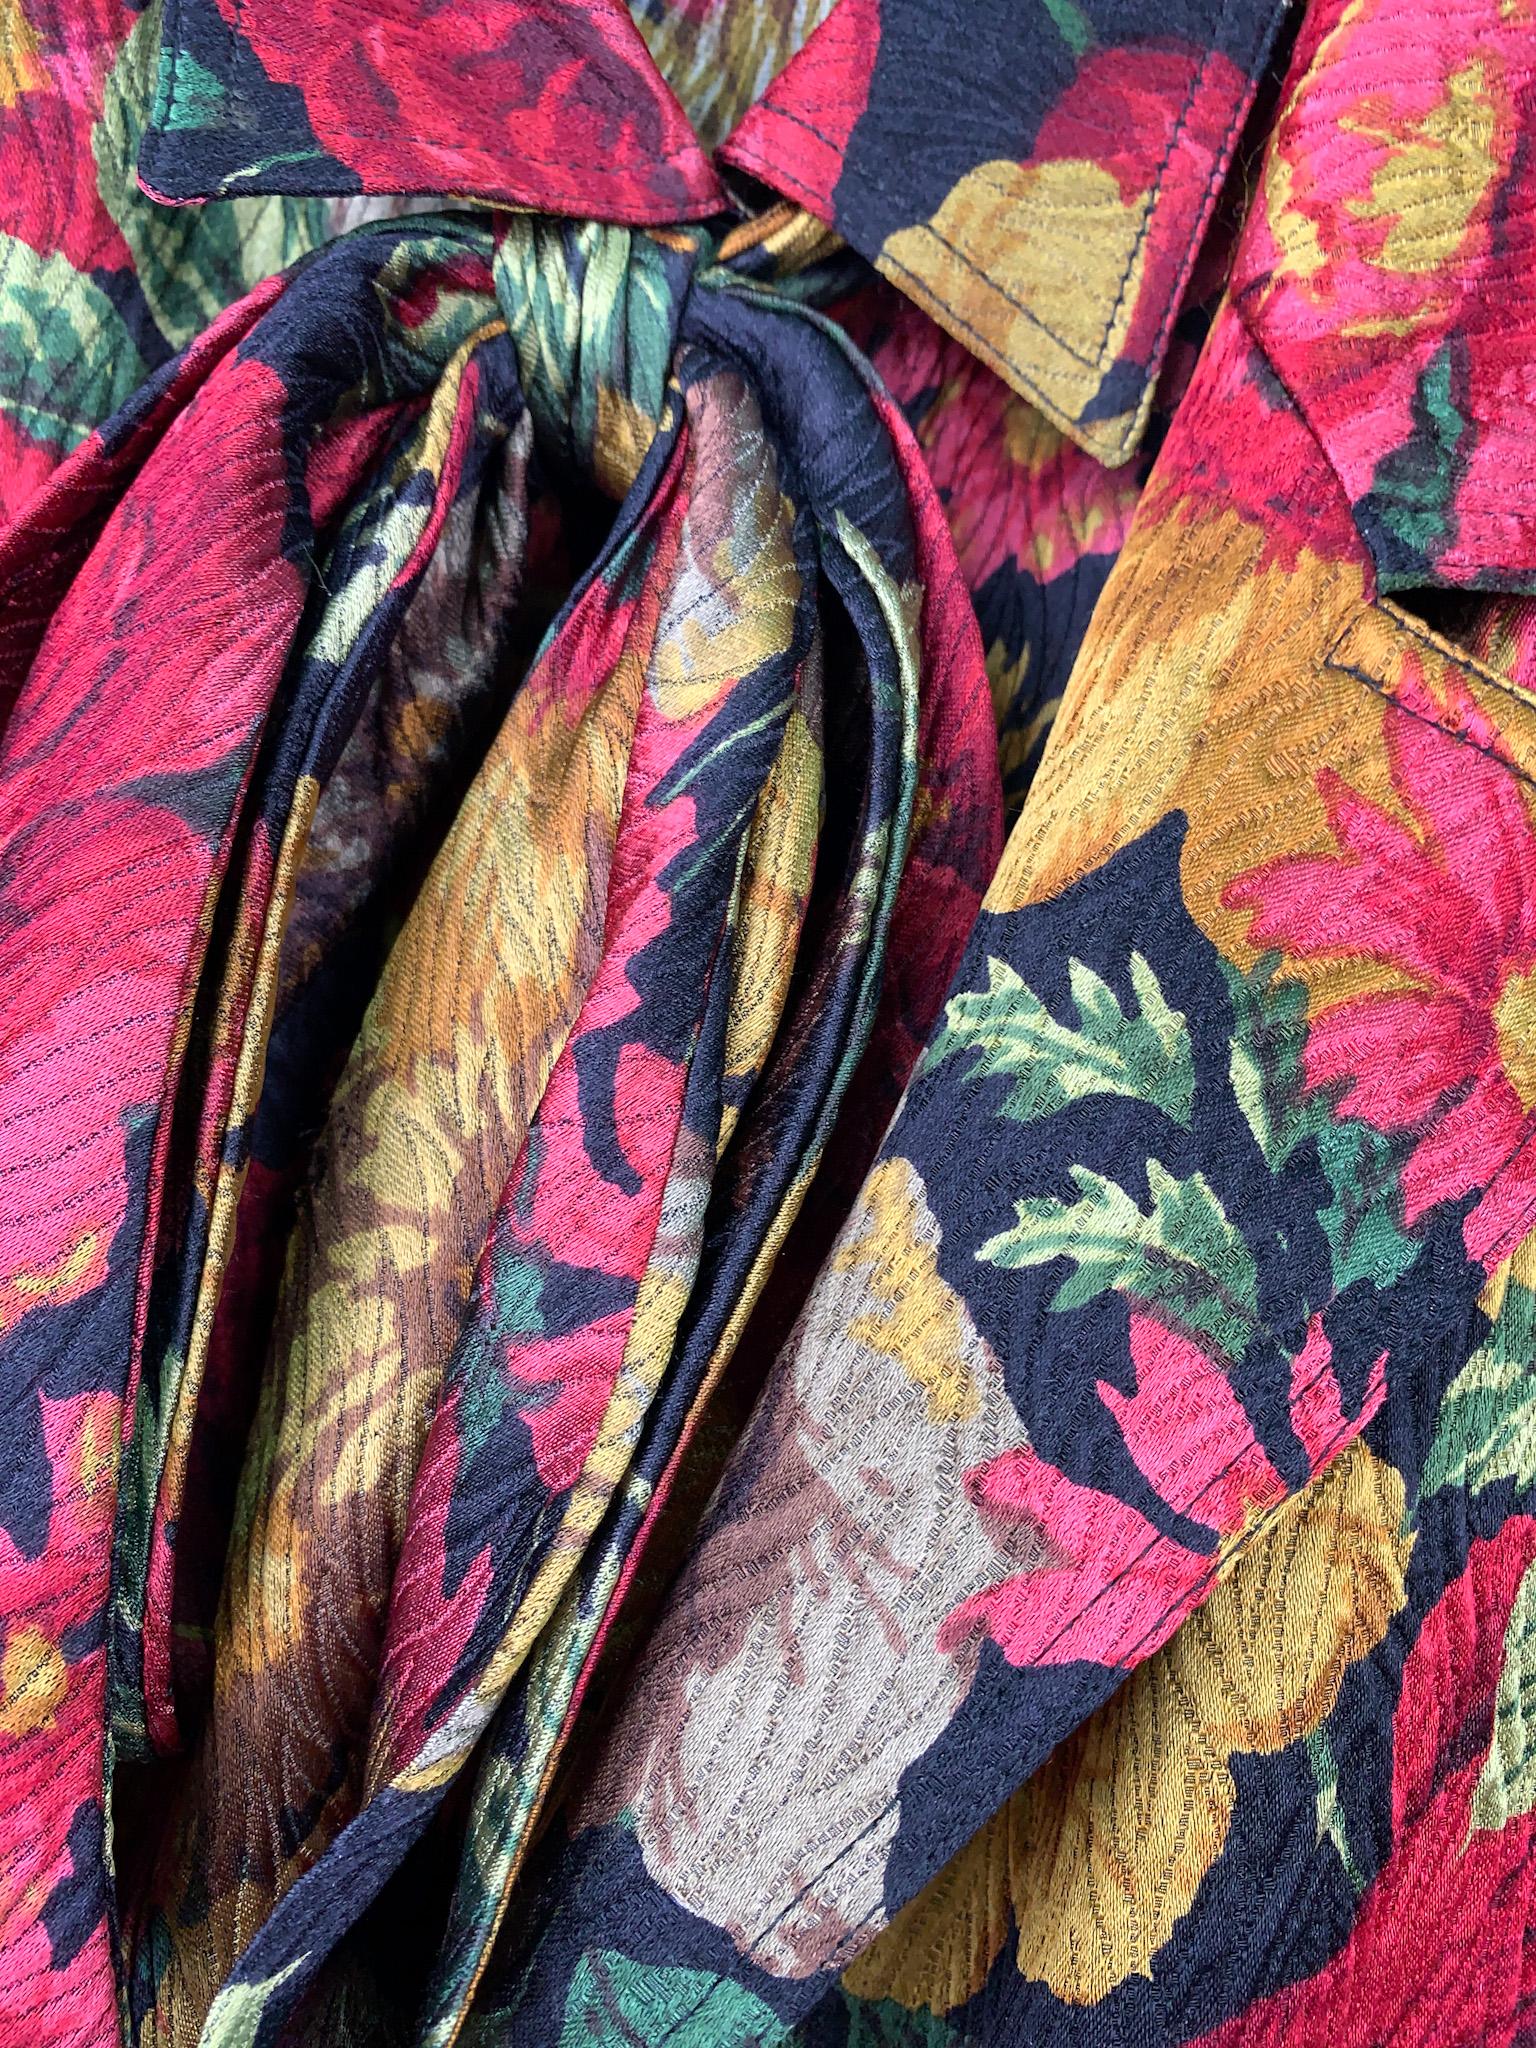 Vintage 80s Valentino Miss V mehrfarbig geblümte Seide zweiteiliges Ensemble aus einem einreihigen Blazer und einer Bluse mit Bijou-Knöpfen und Schleifendetails.
Beachten Sie den sehr eleganten Stoff - floraler Seidenjacquard mit feiner Stickerei,